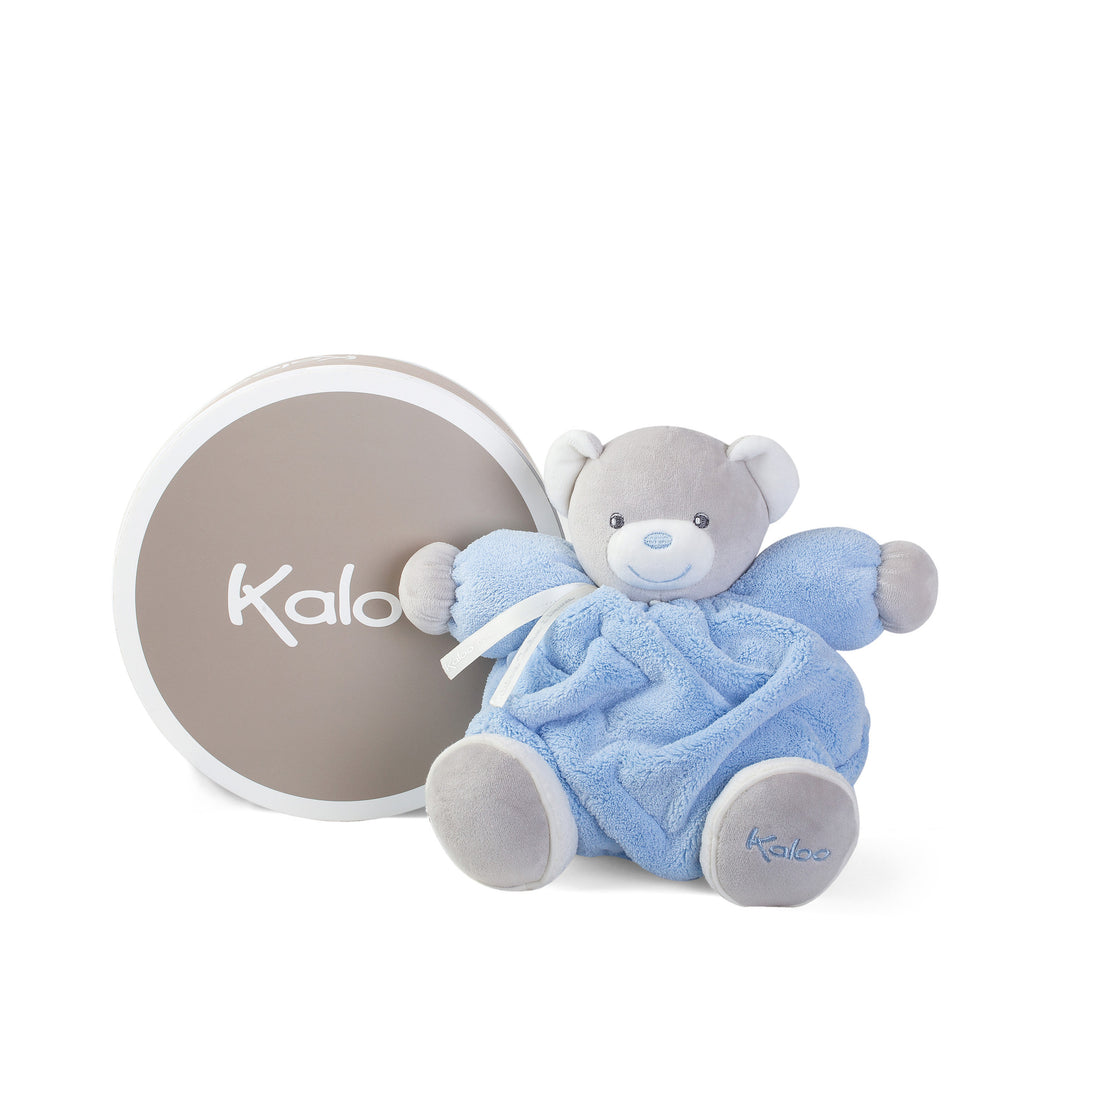 kaloo-plume-medium-blue-chubby-bear- (2)